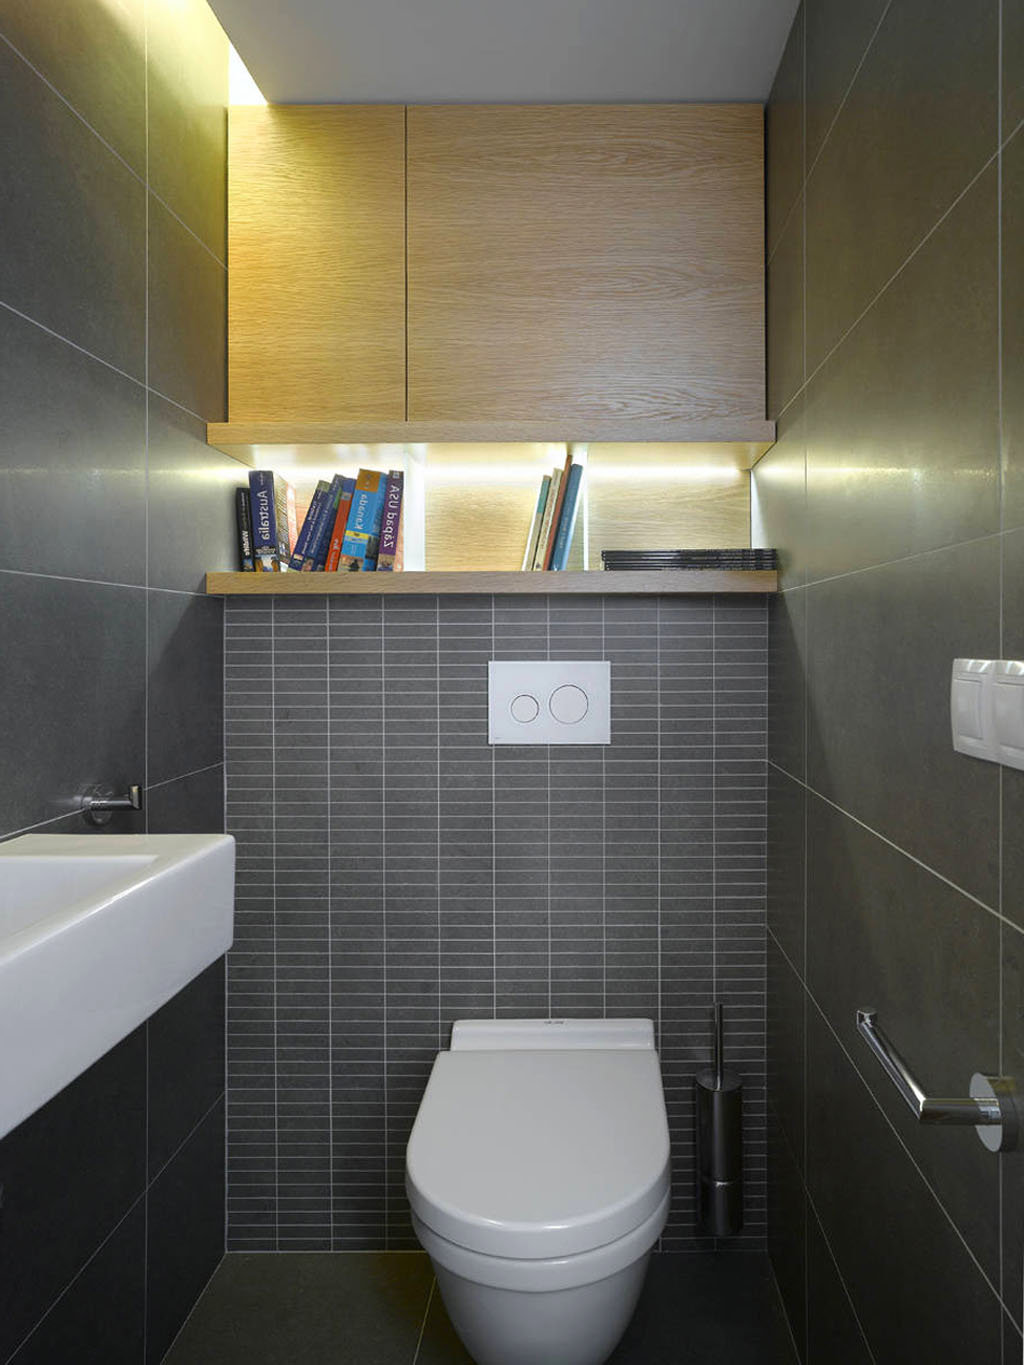 Плитка в туалет дизайн для маленькой площади реальные фото